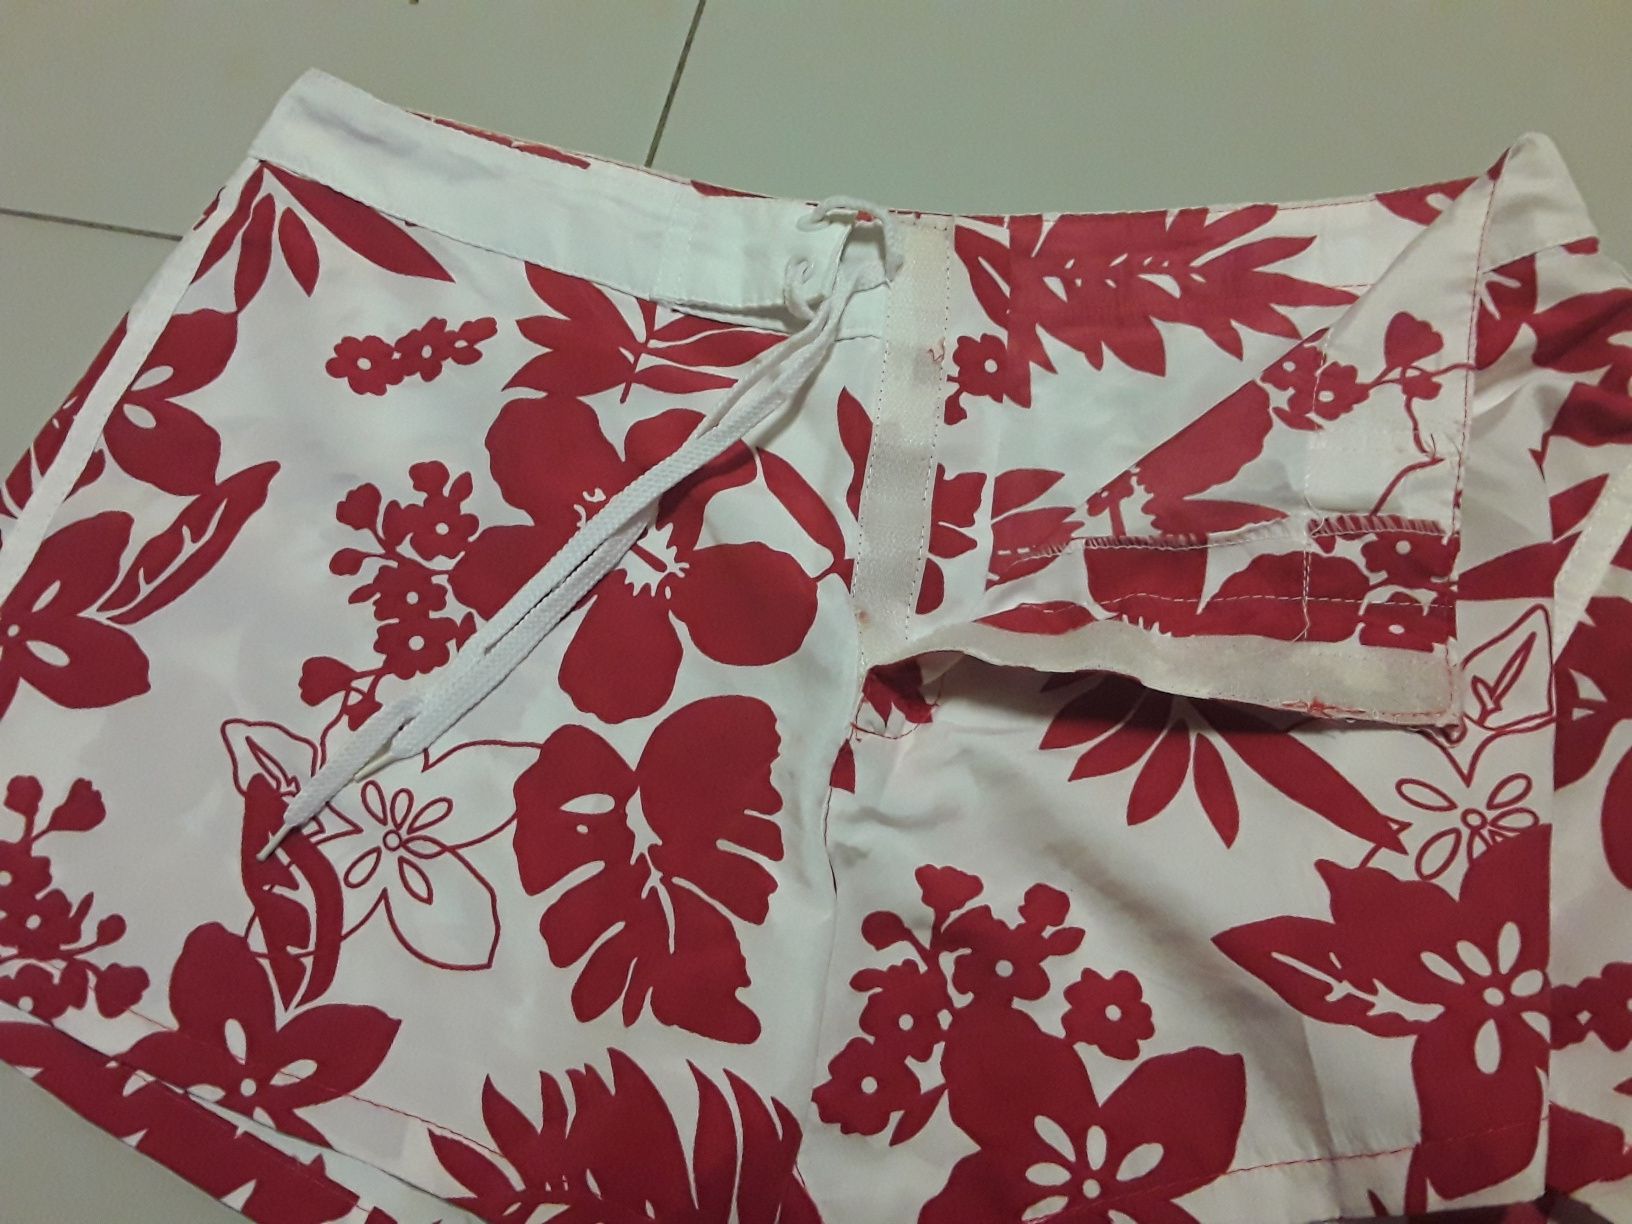 Calções brancos com flores havaianas vermelhas tam. 34